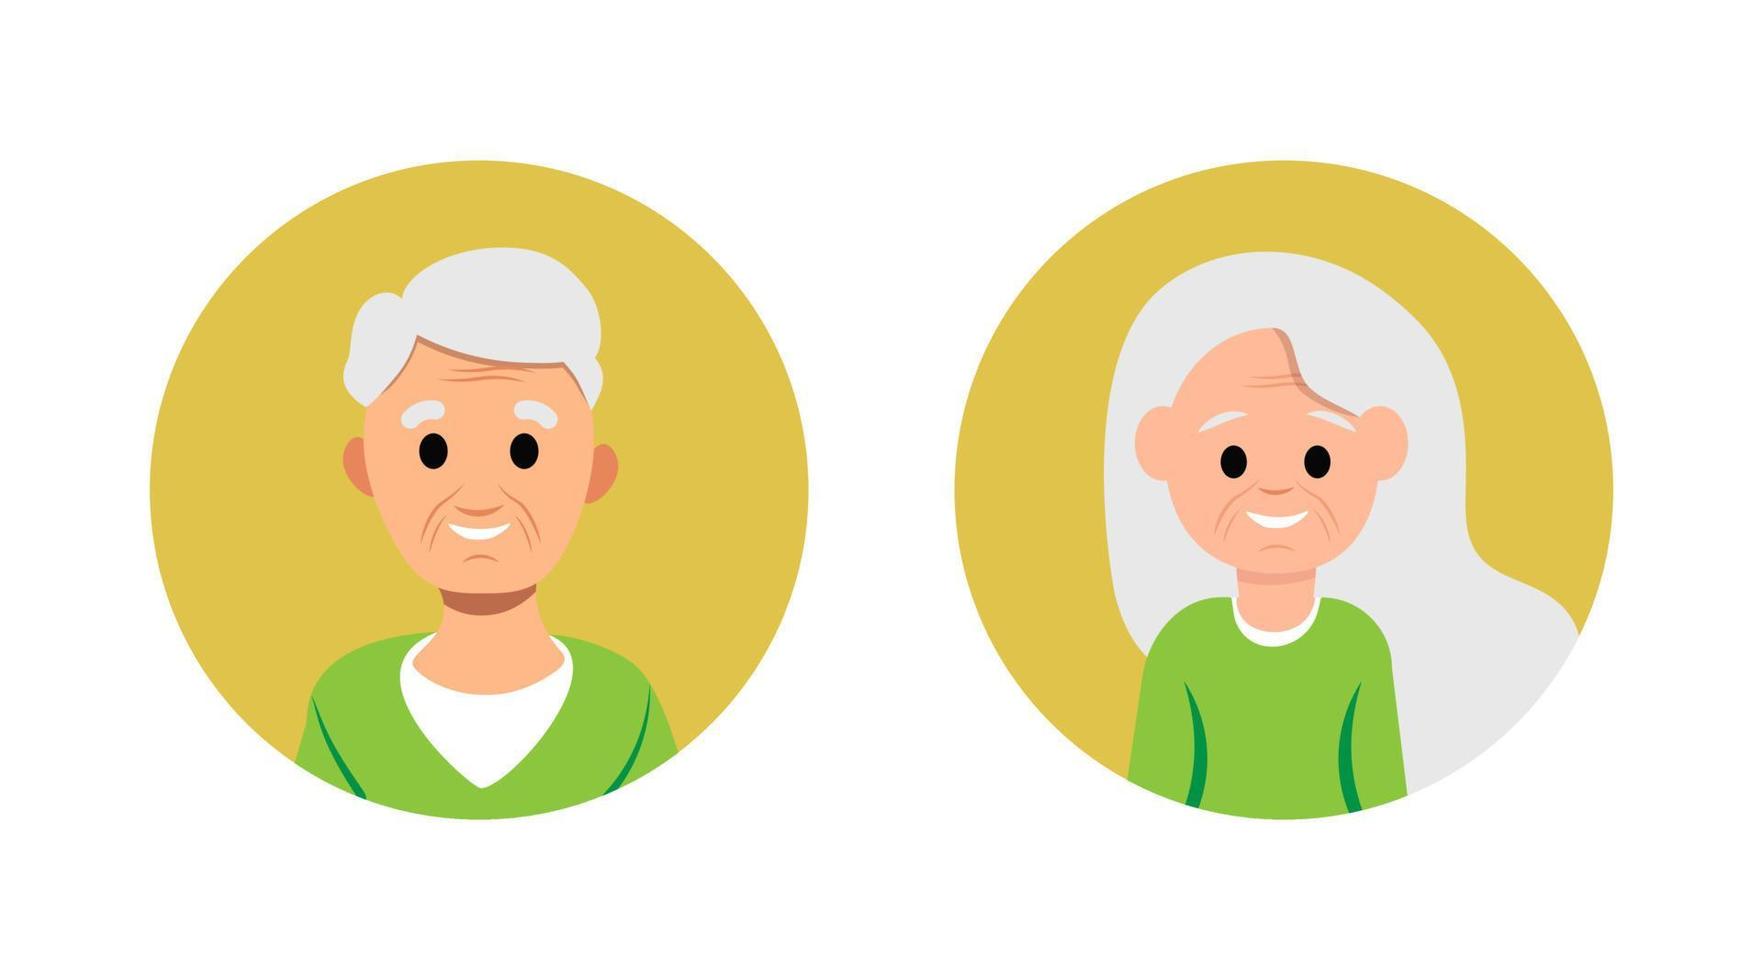 oude volwassen vrouw en man avatar vrolijk lachend gezicht plat karakter geïsoleerd vector set persoon oma en opa portret mensen hoofd ouderling leeftijd pensionering